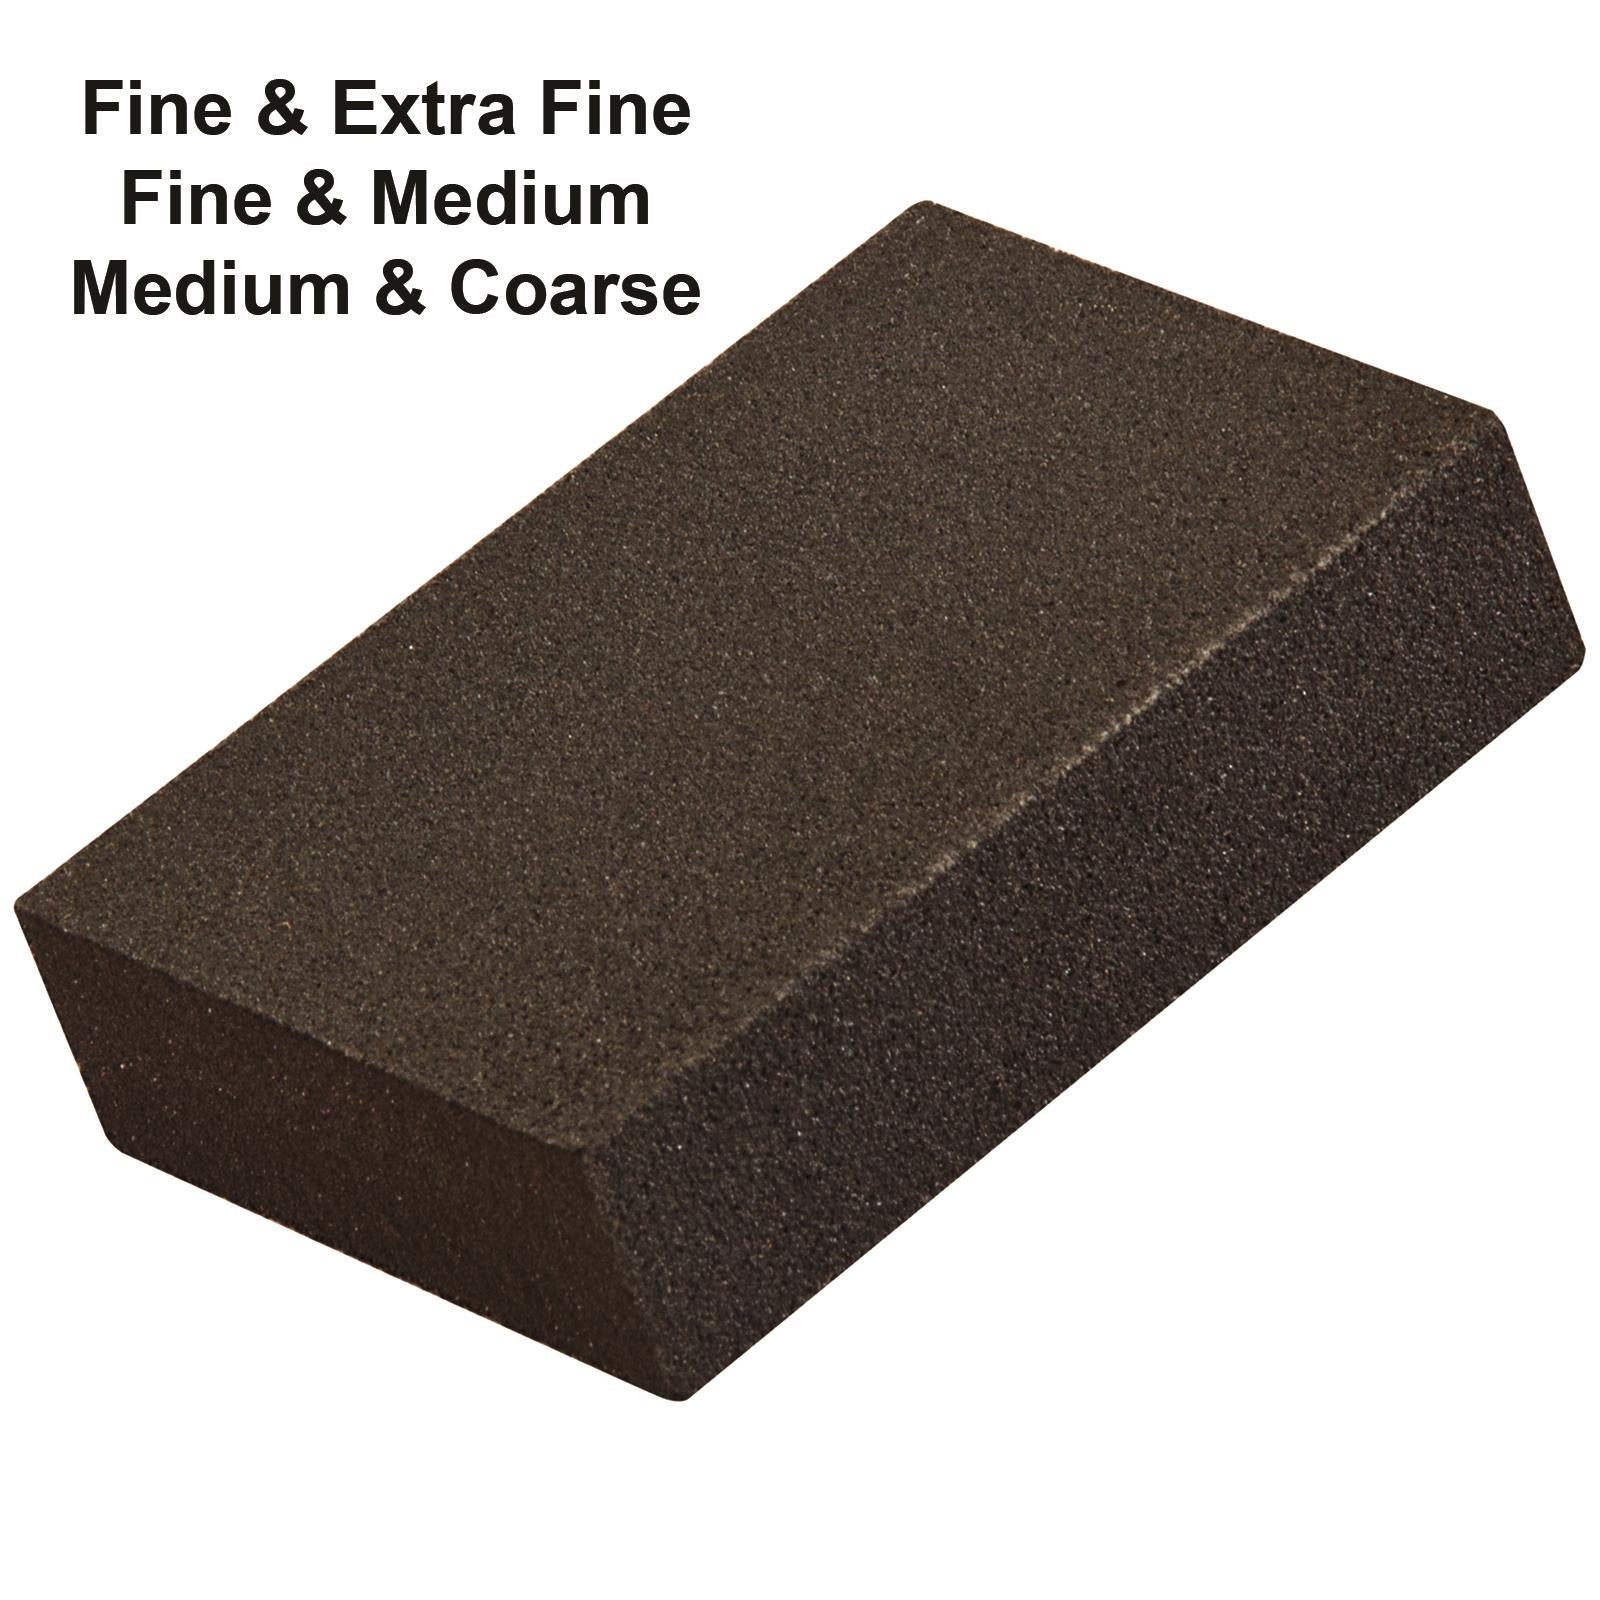 Silverline Foam Sanding Blocks Extra Fine - Coarse